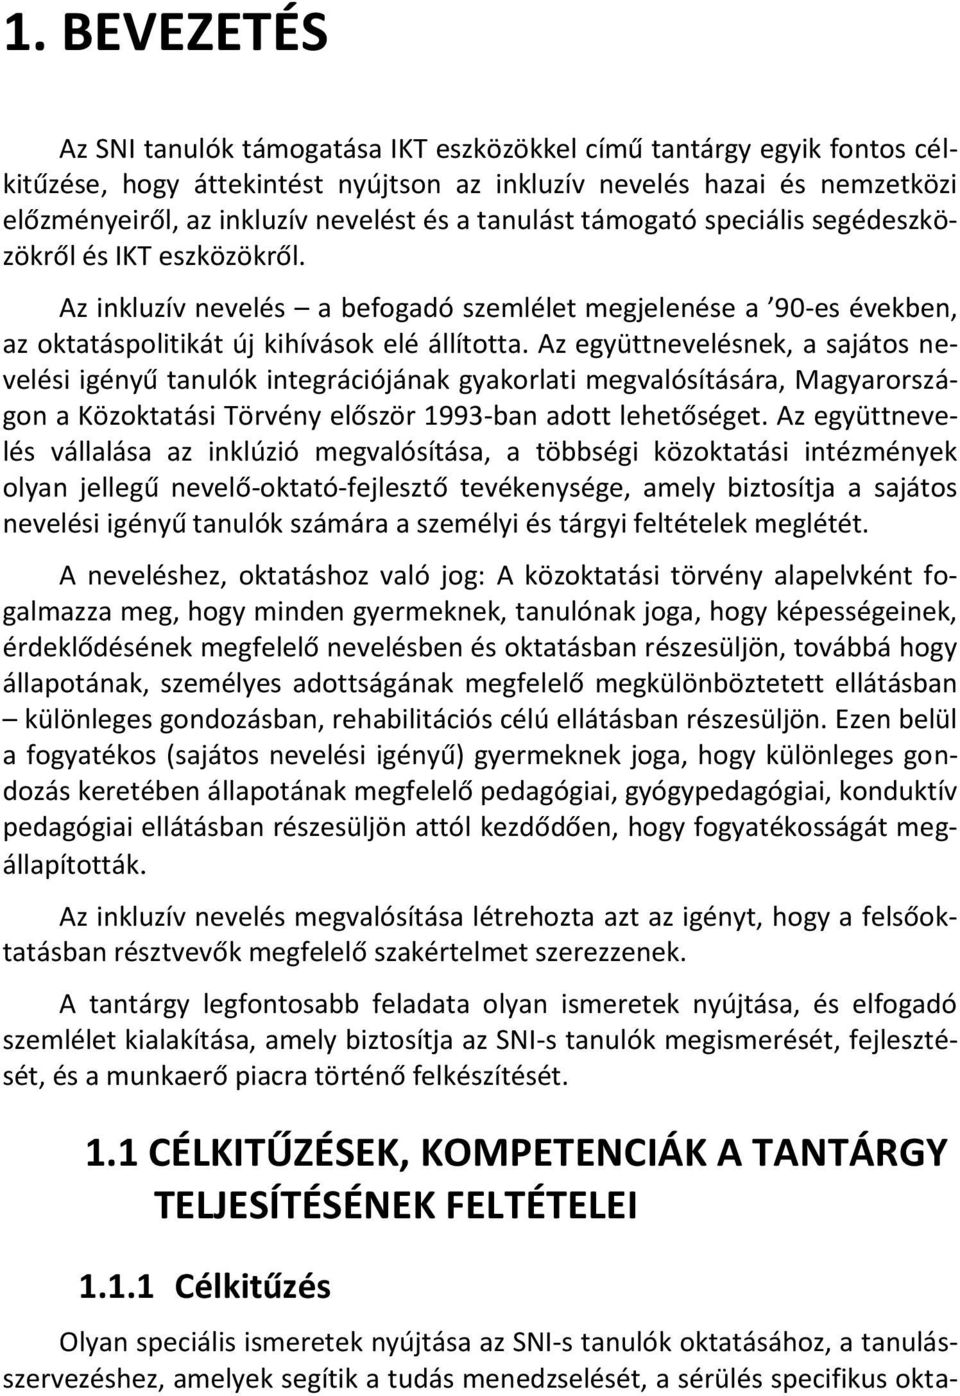 Az együttnevelésnek, a sajátos nevelési igényű tanulók integrációjának gyakorlati megvalósítására, Magyarországon a Közoktatási Törvény először 1993-ban adott lehetőséget.